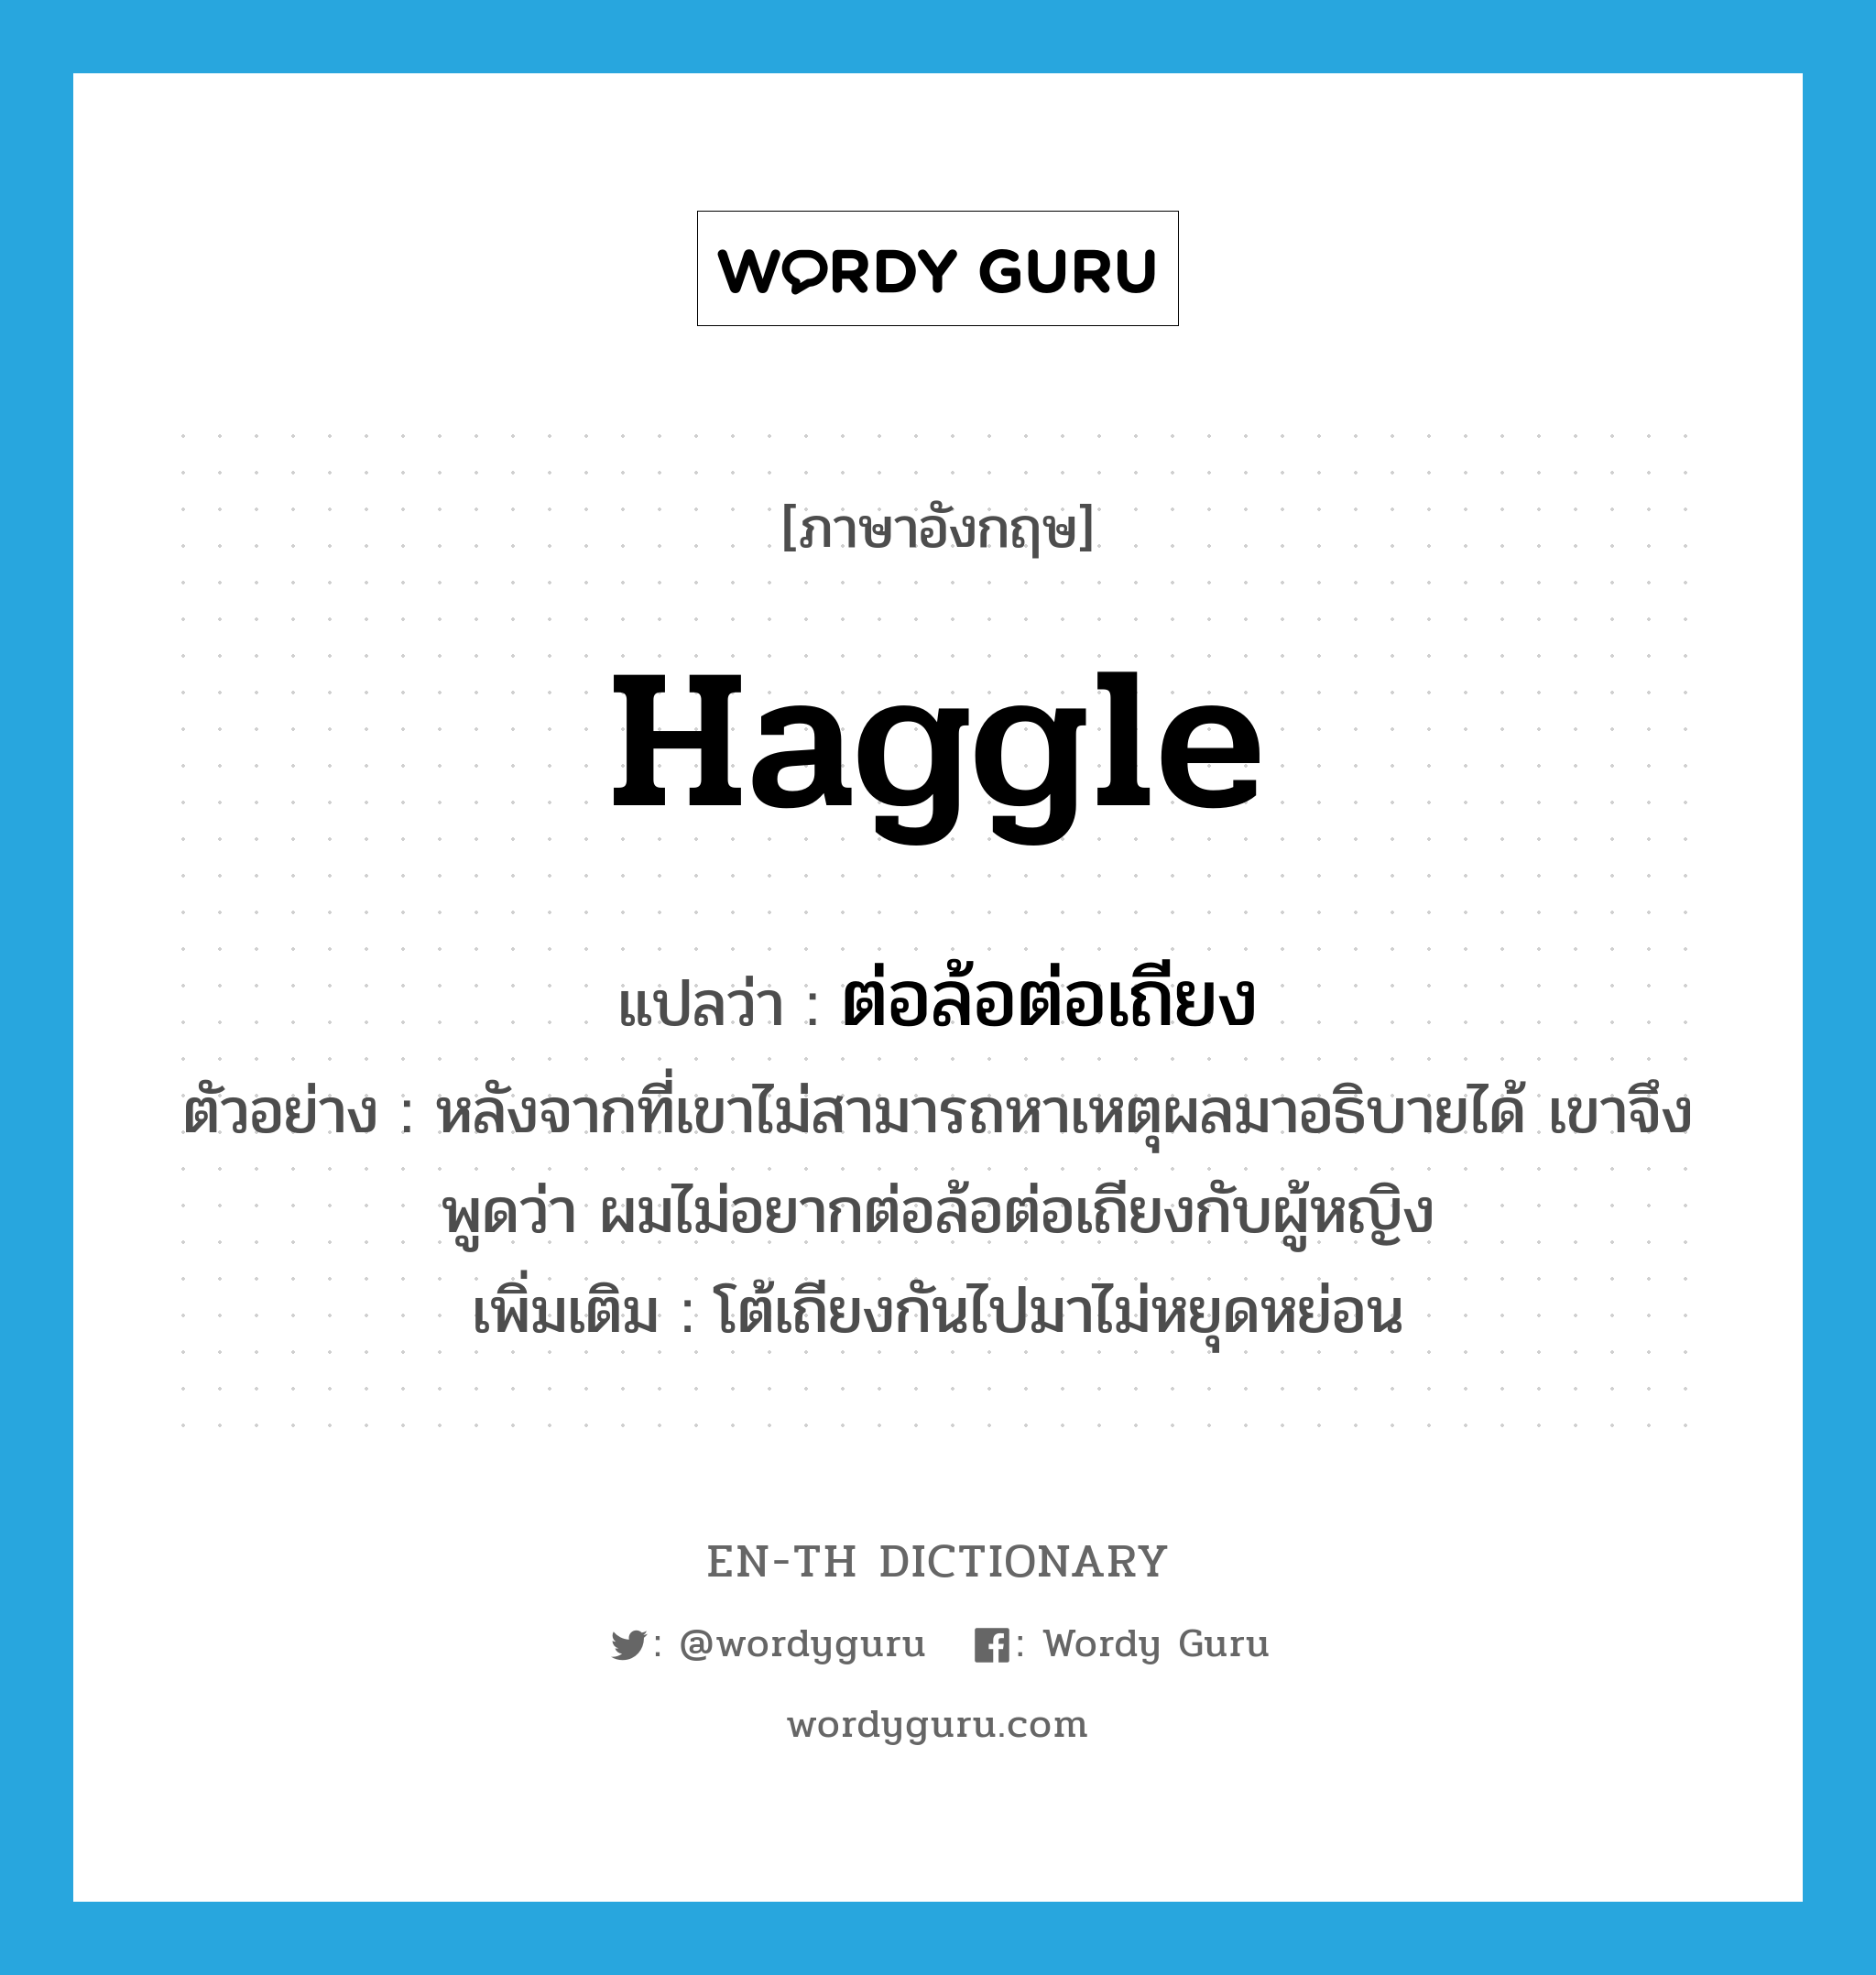 haggle แปลว่า?, คำศัพท์ภาษาอังกฤษ haggle แปลว่า ต่อล้อต่อเถียง ประเภท V ตัวอย่าง หลังจากที่เขาไม่สามารถหาเหตุผลมาอธิบายได้ เขาจึงพูดว่า ผมไม่อยากต่อล้อต่อเถียงกับผู้หญิง เพิ่มเติม โต้เถียงกันไปมาไม่หยุดหย่อน หมวด V